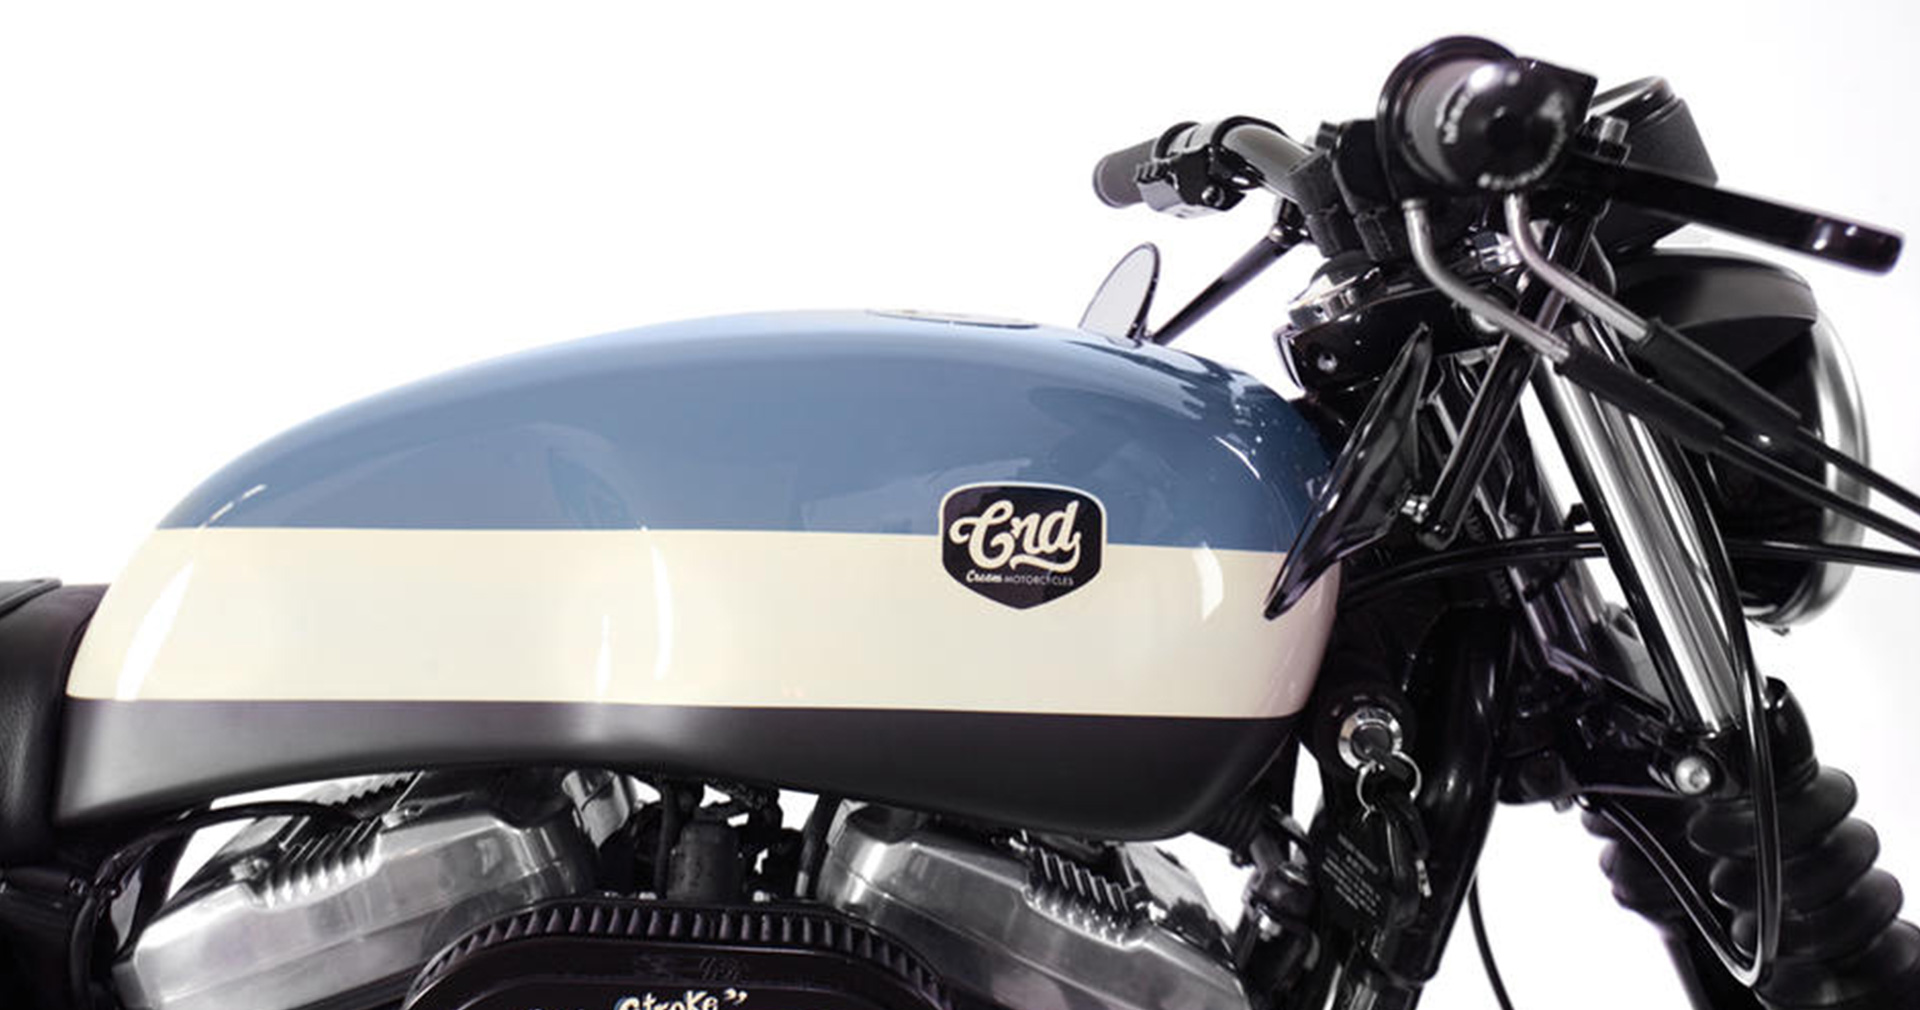 CRD21 Harley Davidson XL1200 Nightster